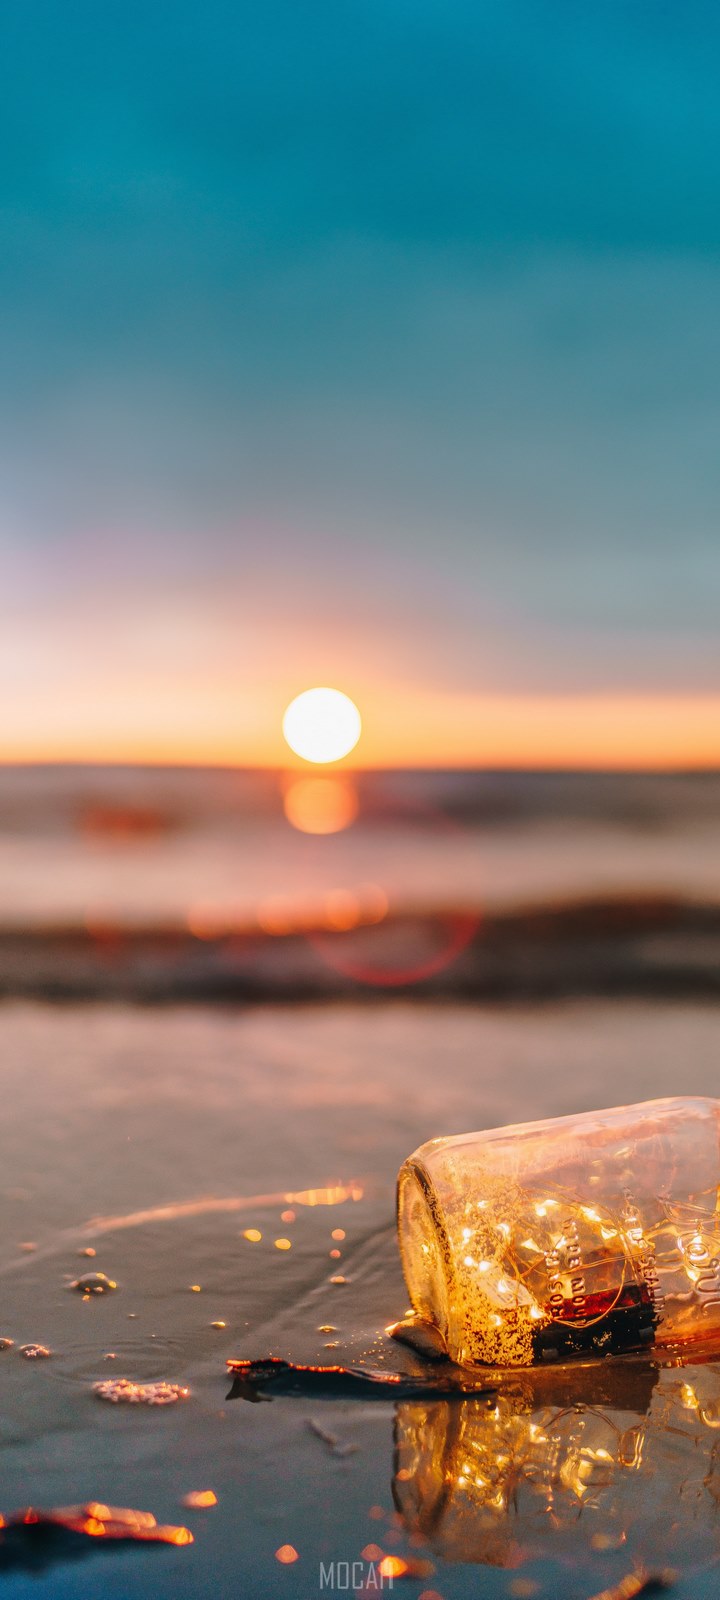 fairy lights in a mason jar on a wet sandy beach at sunset, bottled up, Huawei Enjoy 7S full HD wallpaper, 1080x2160. Mocah HD Wallpaper